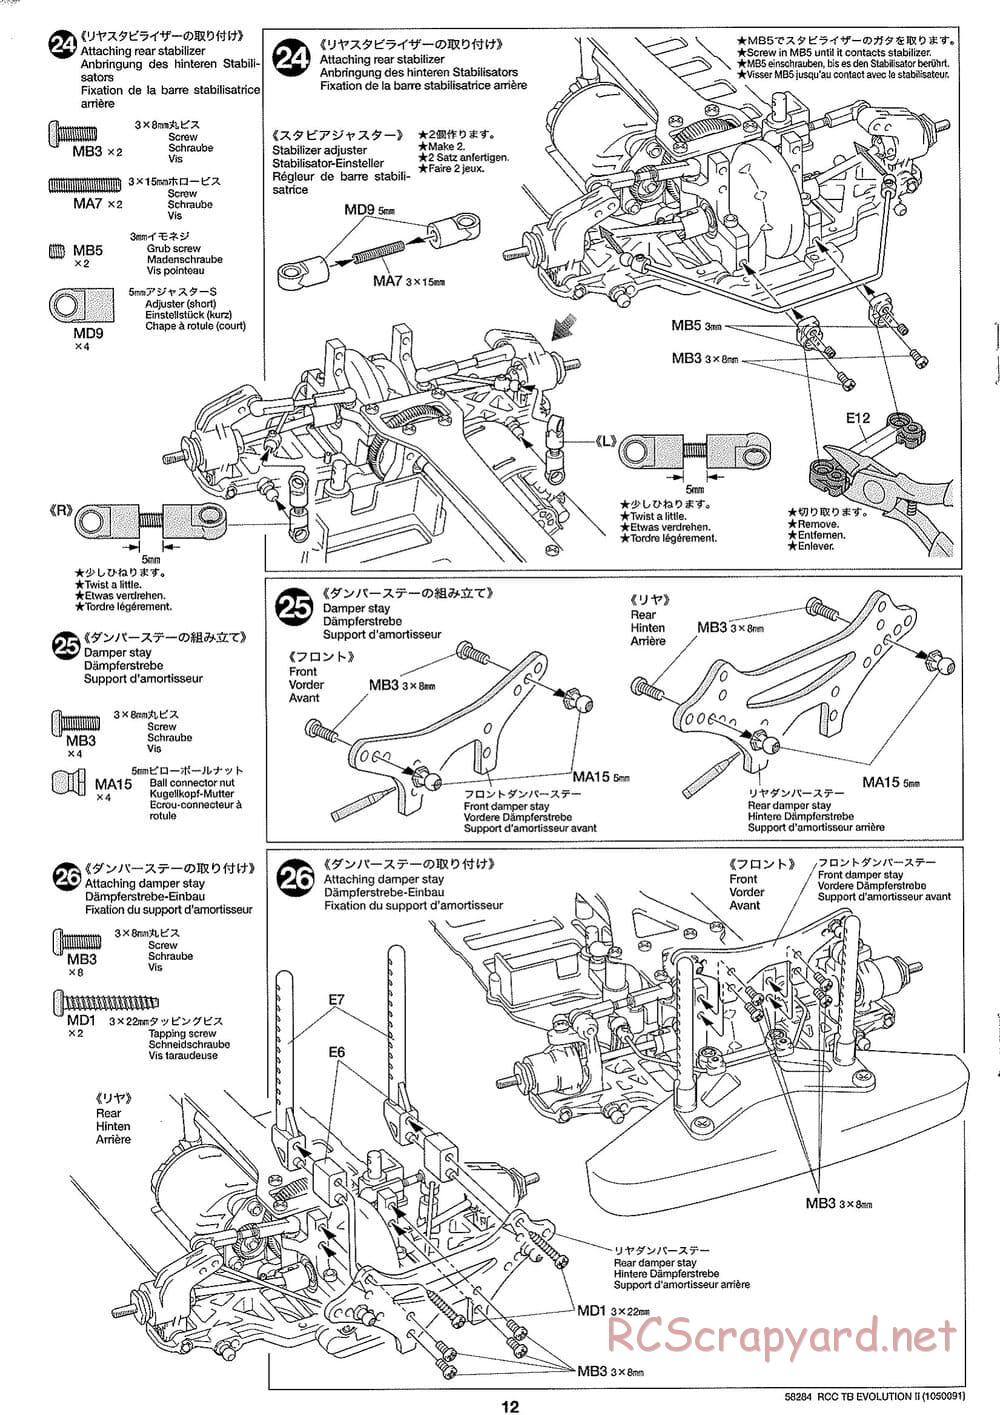 Tamiya - TB Evolution II Chassis - Manual - Page 12